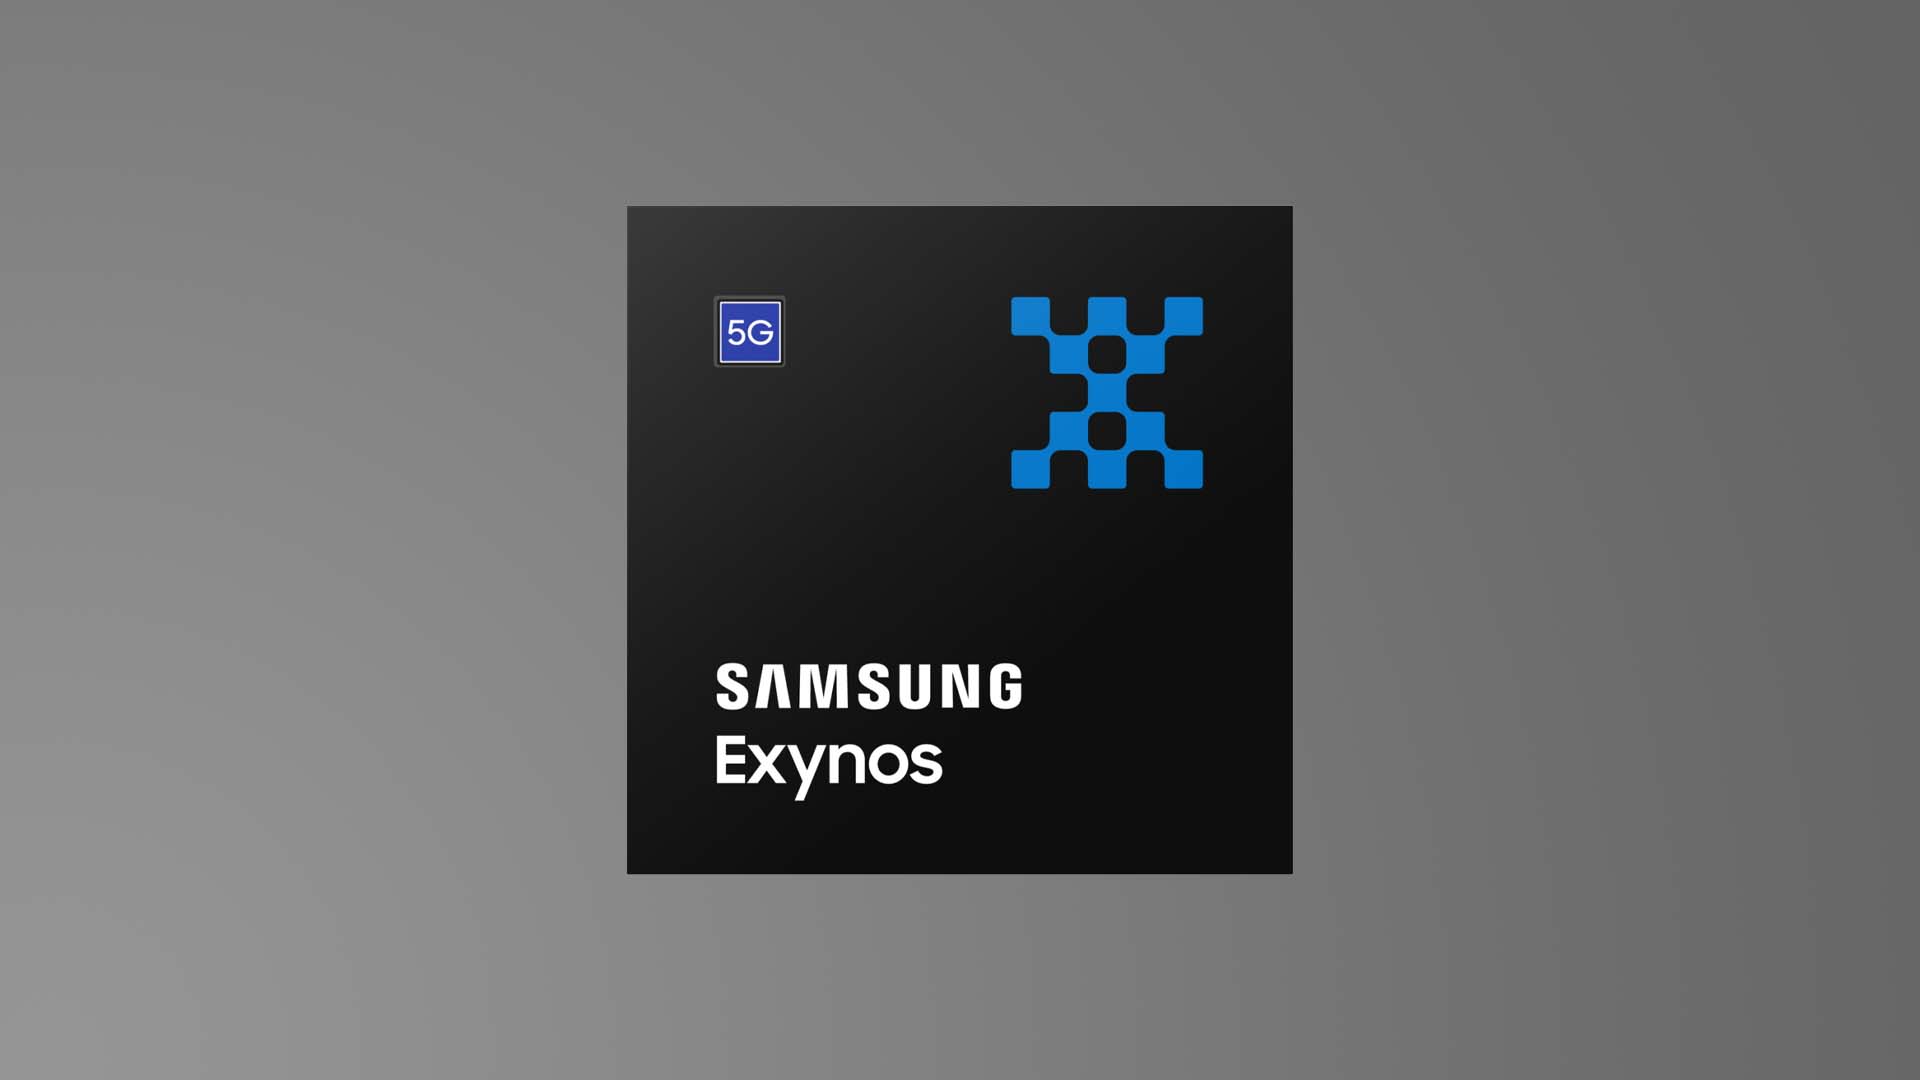 Samsung-Exynos-Chip-5G-VoNR.jpeg